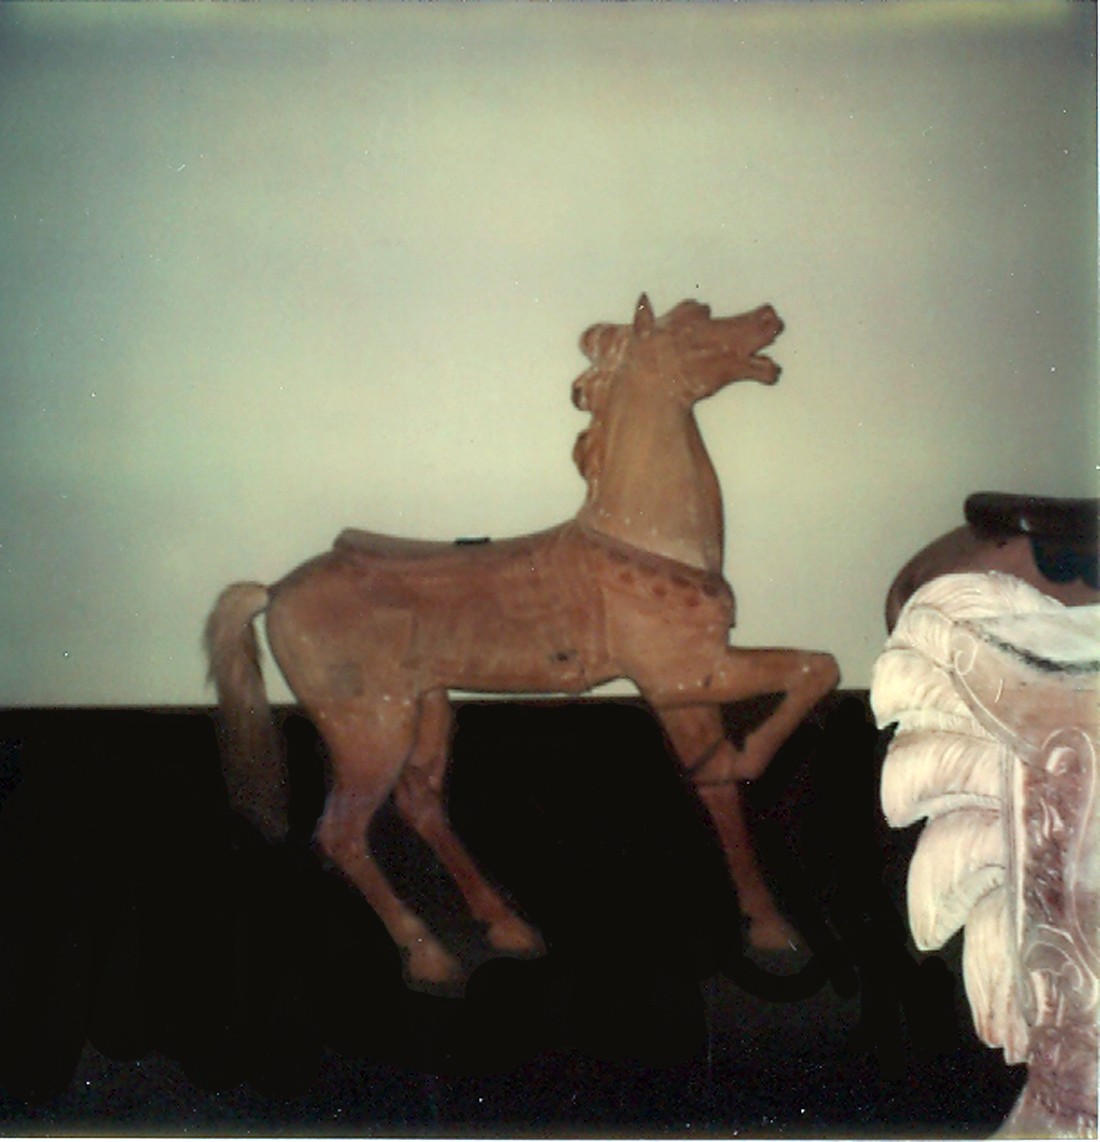 Fraley-Redbug-Studio-carousel-horse-restoration-1980-visit_006